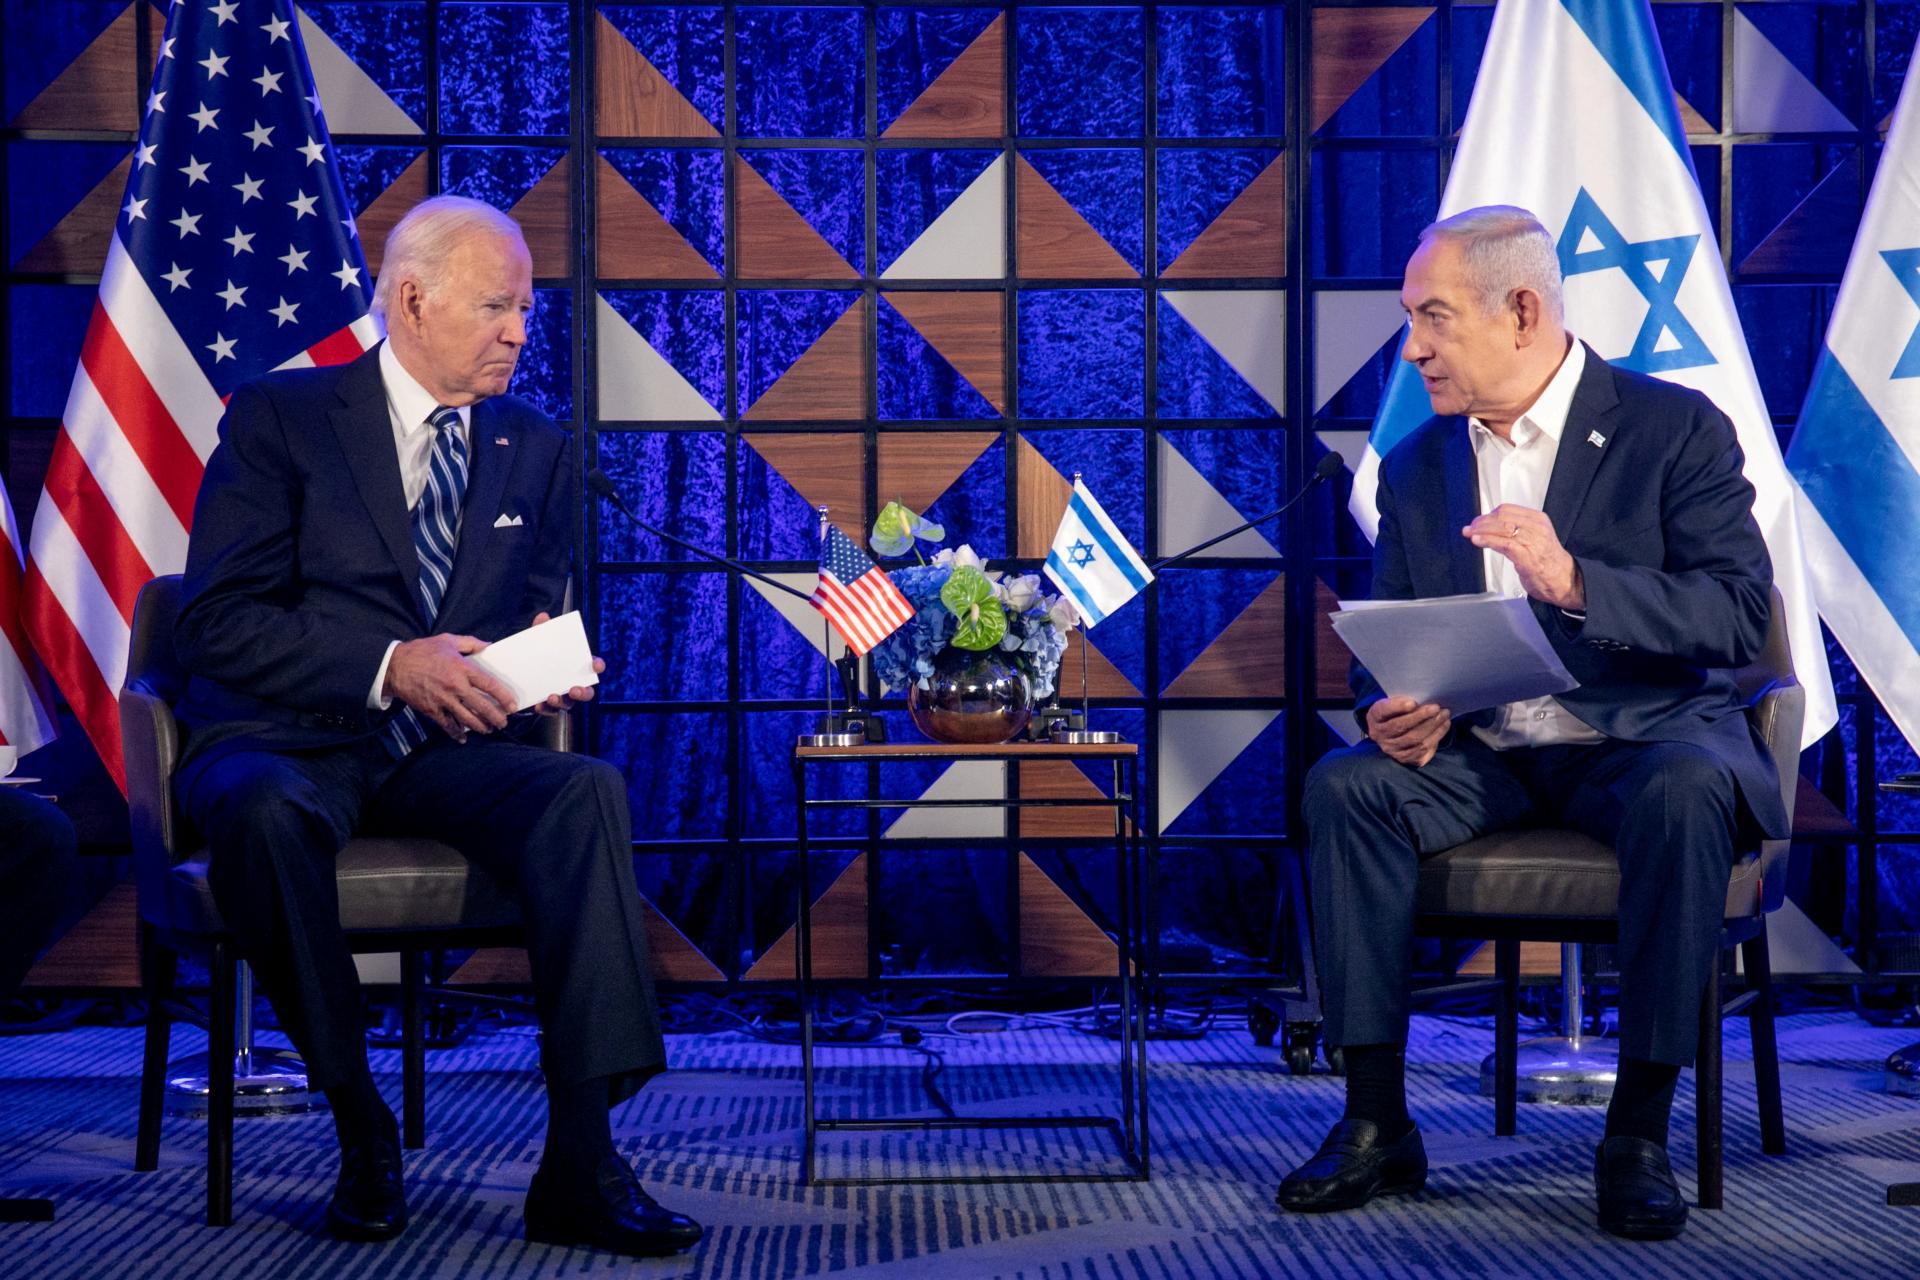 Útoky na humanitárnych pracovníkov sú neprijateľné, povedal Biden Netanjahuovi. Americká podpora nie je istá